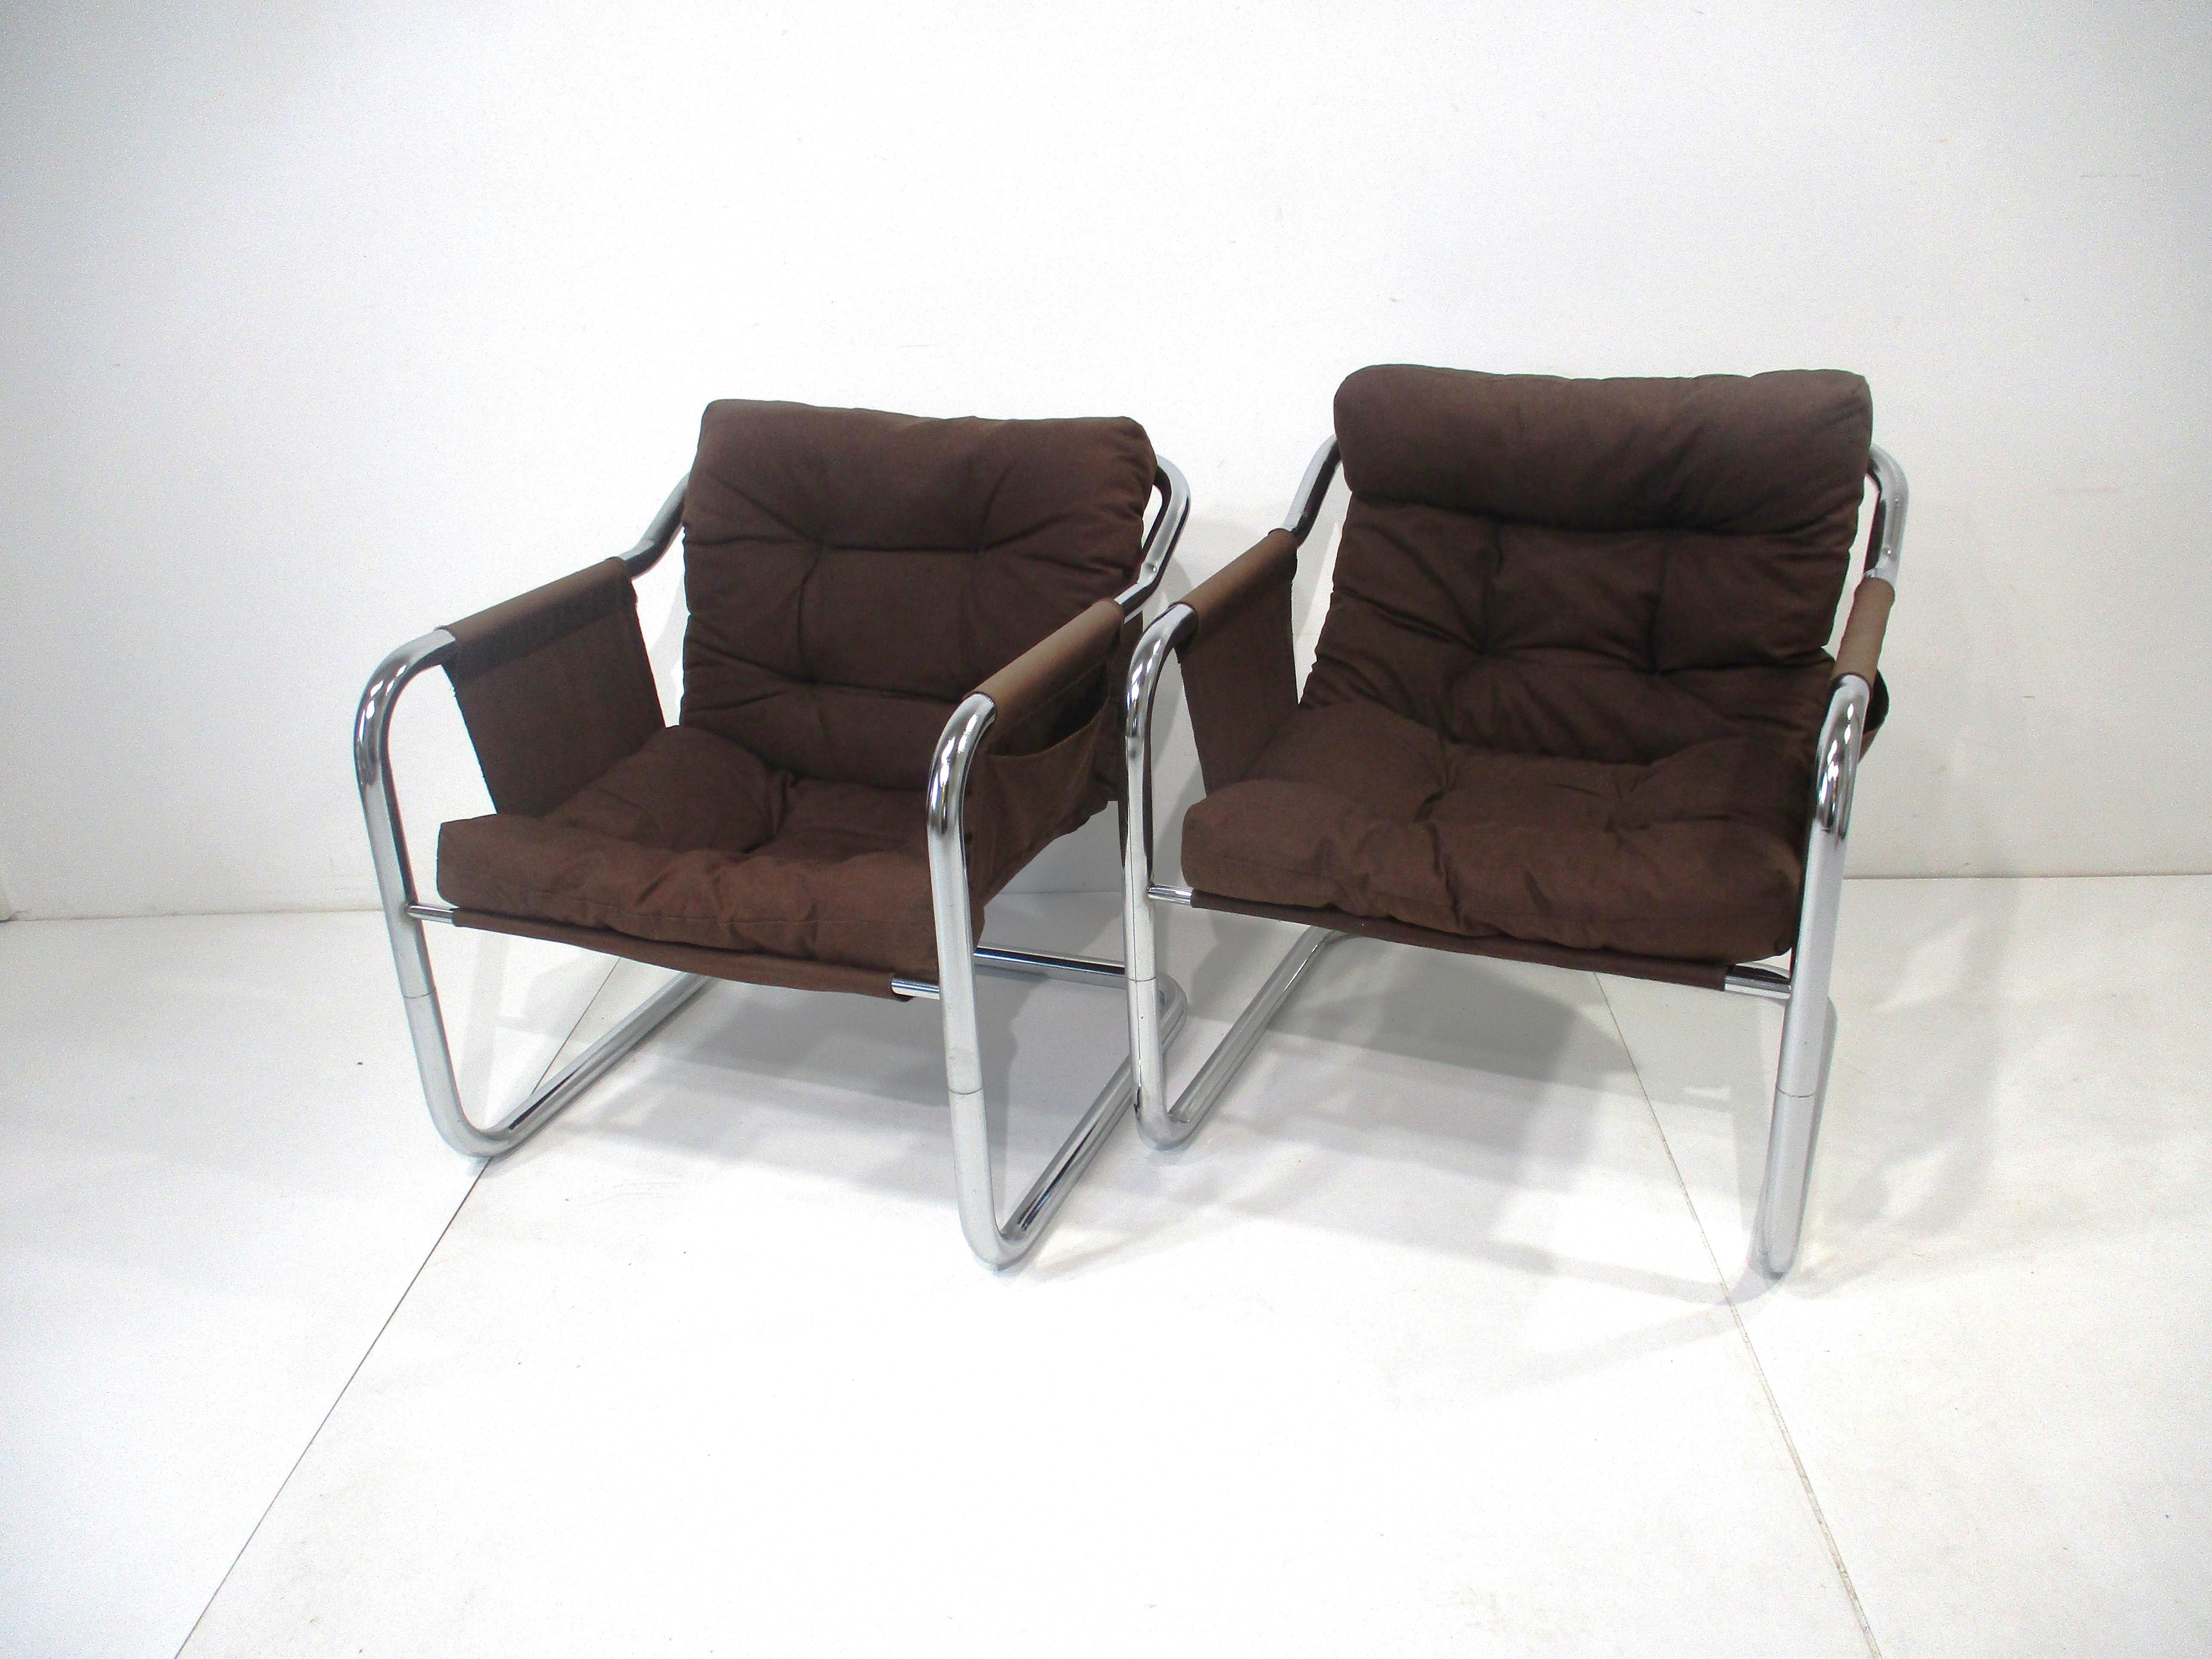 Ein Paar skulpturale Freischwinger-Sessel aus verchromtem Stahlrohr mit braunem Leinenbezug und gepolsterten Kissen. An jeder Armlehne befindet sich eine Tasche für Lesestoff oder einfach nur zur Aufbewahrung, auf dem Etikett an einem Stuhl steht